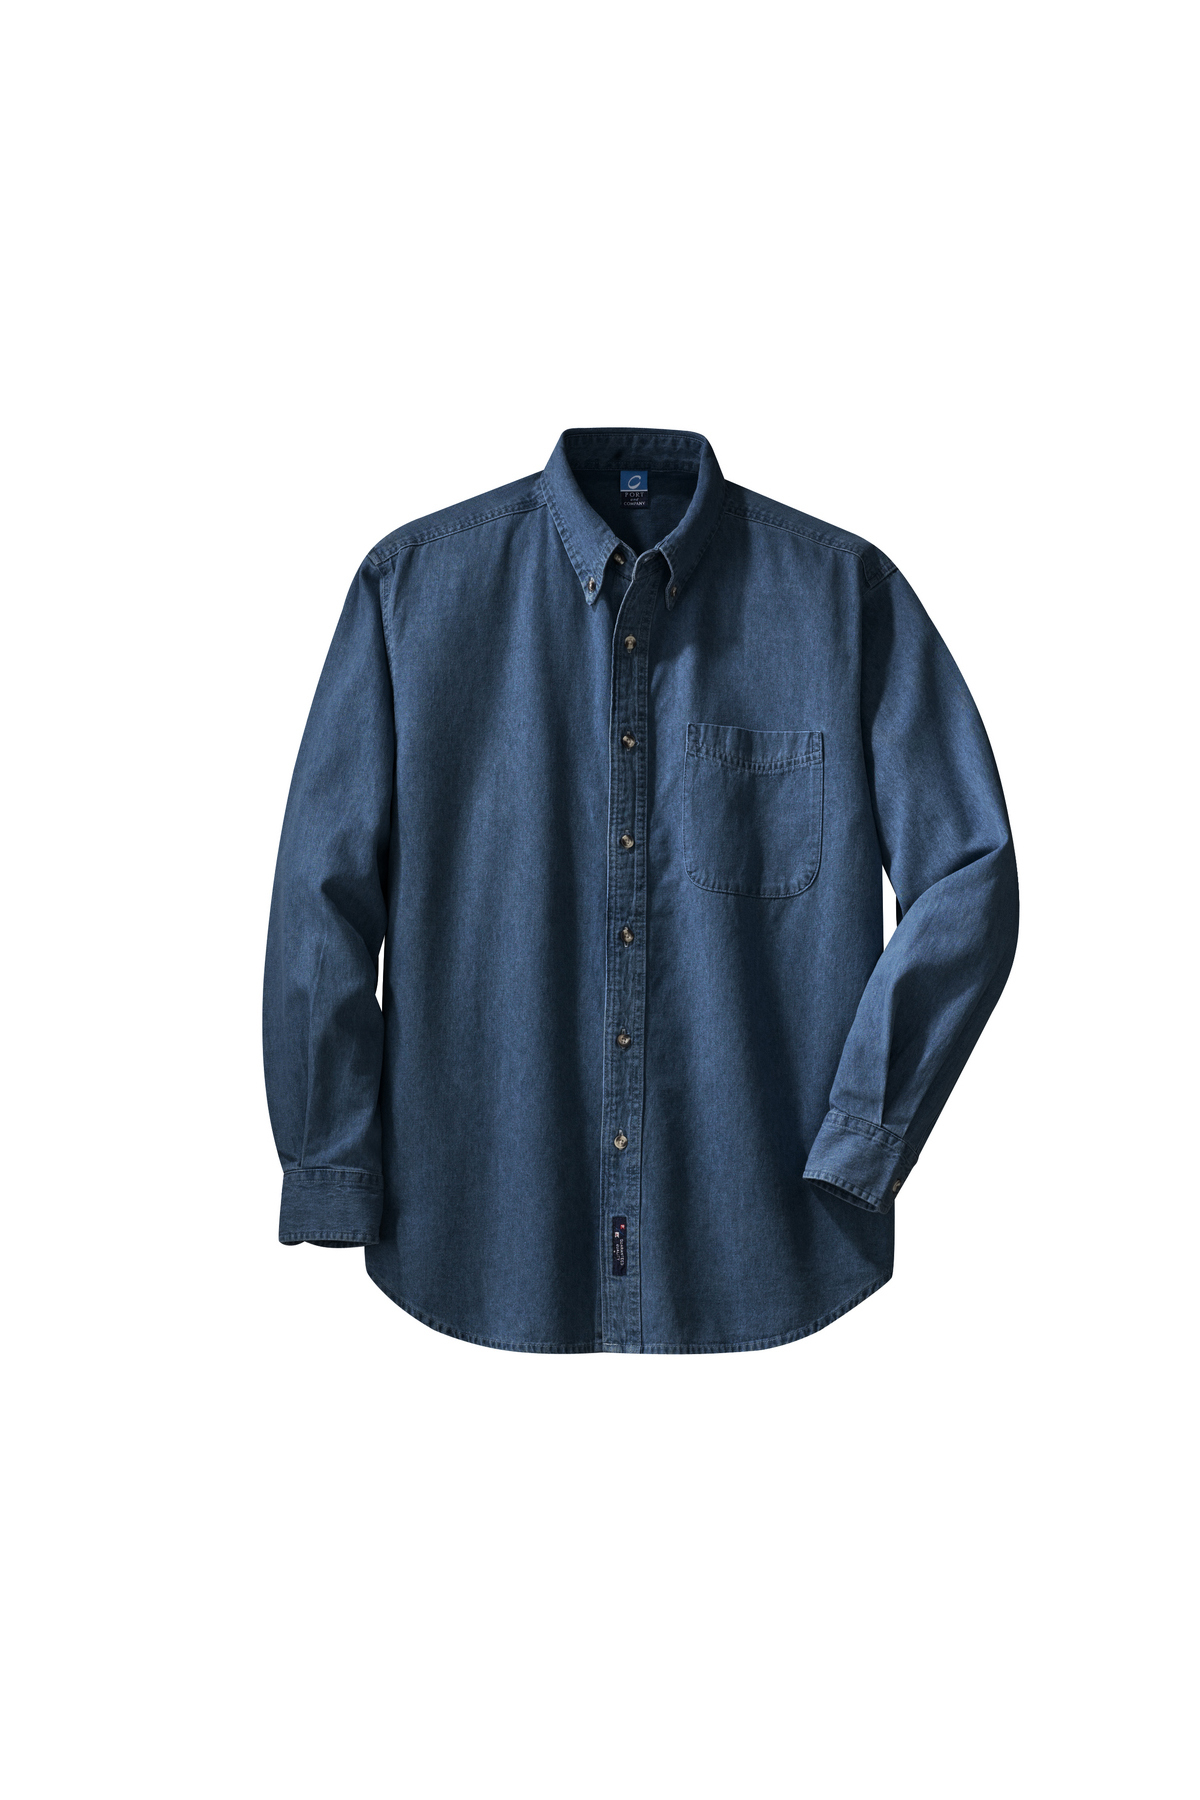 100% Cotton, 6.5 oz Men's dark denim shirt with Logo-TM